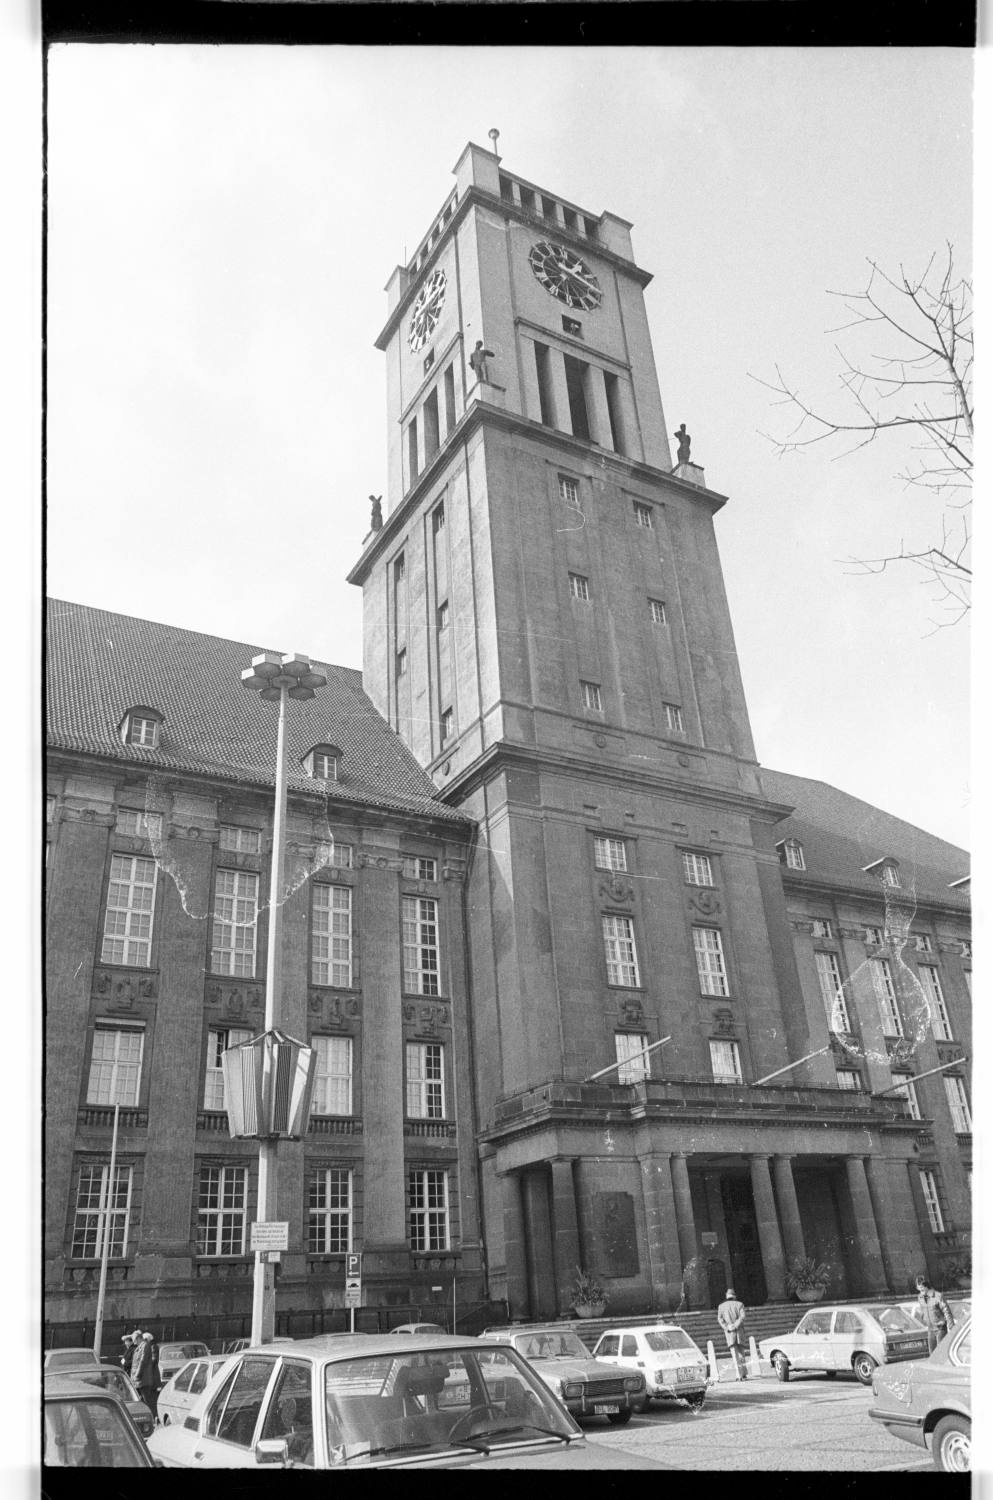 Kleinbildnegative: Rathaus Schöneberg, 1979 (Museen Tempelhof-Schöneberg/Jürgen Henschel RR-F)